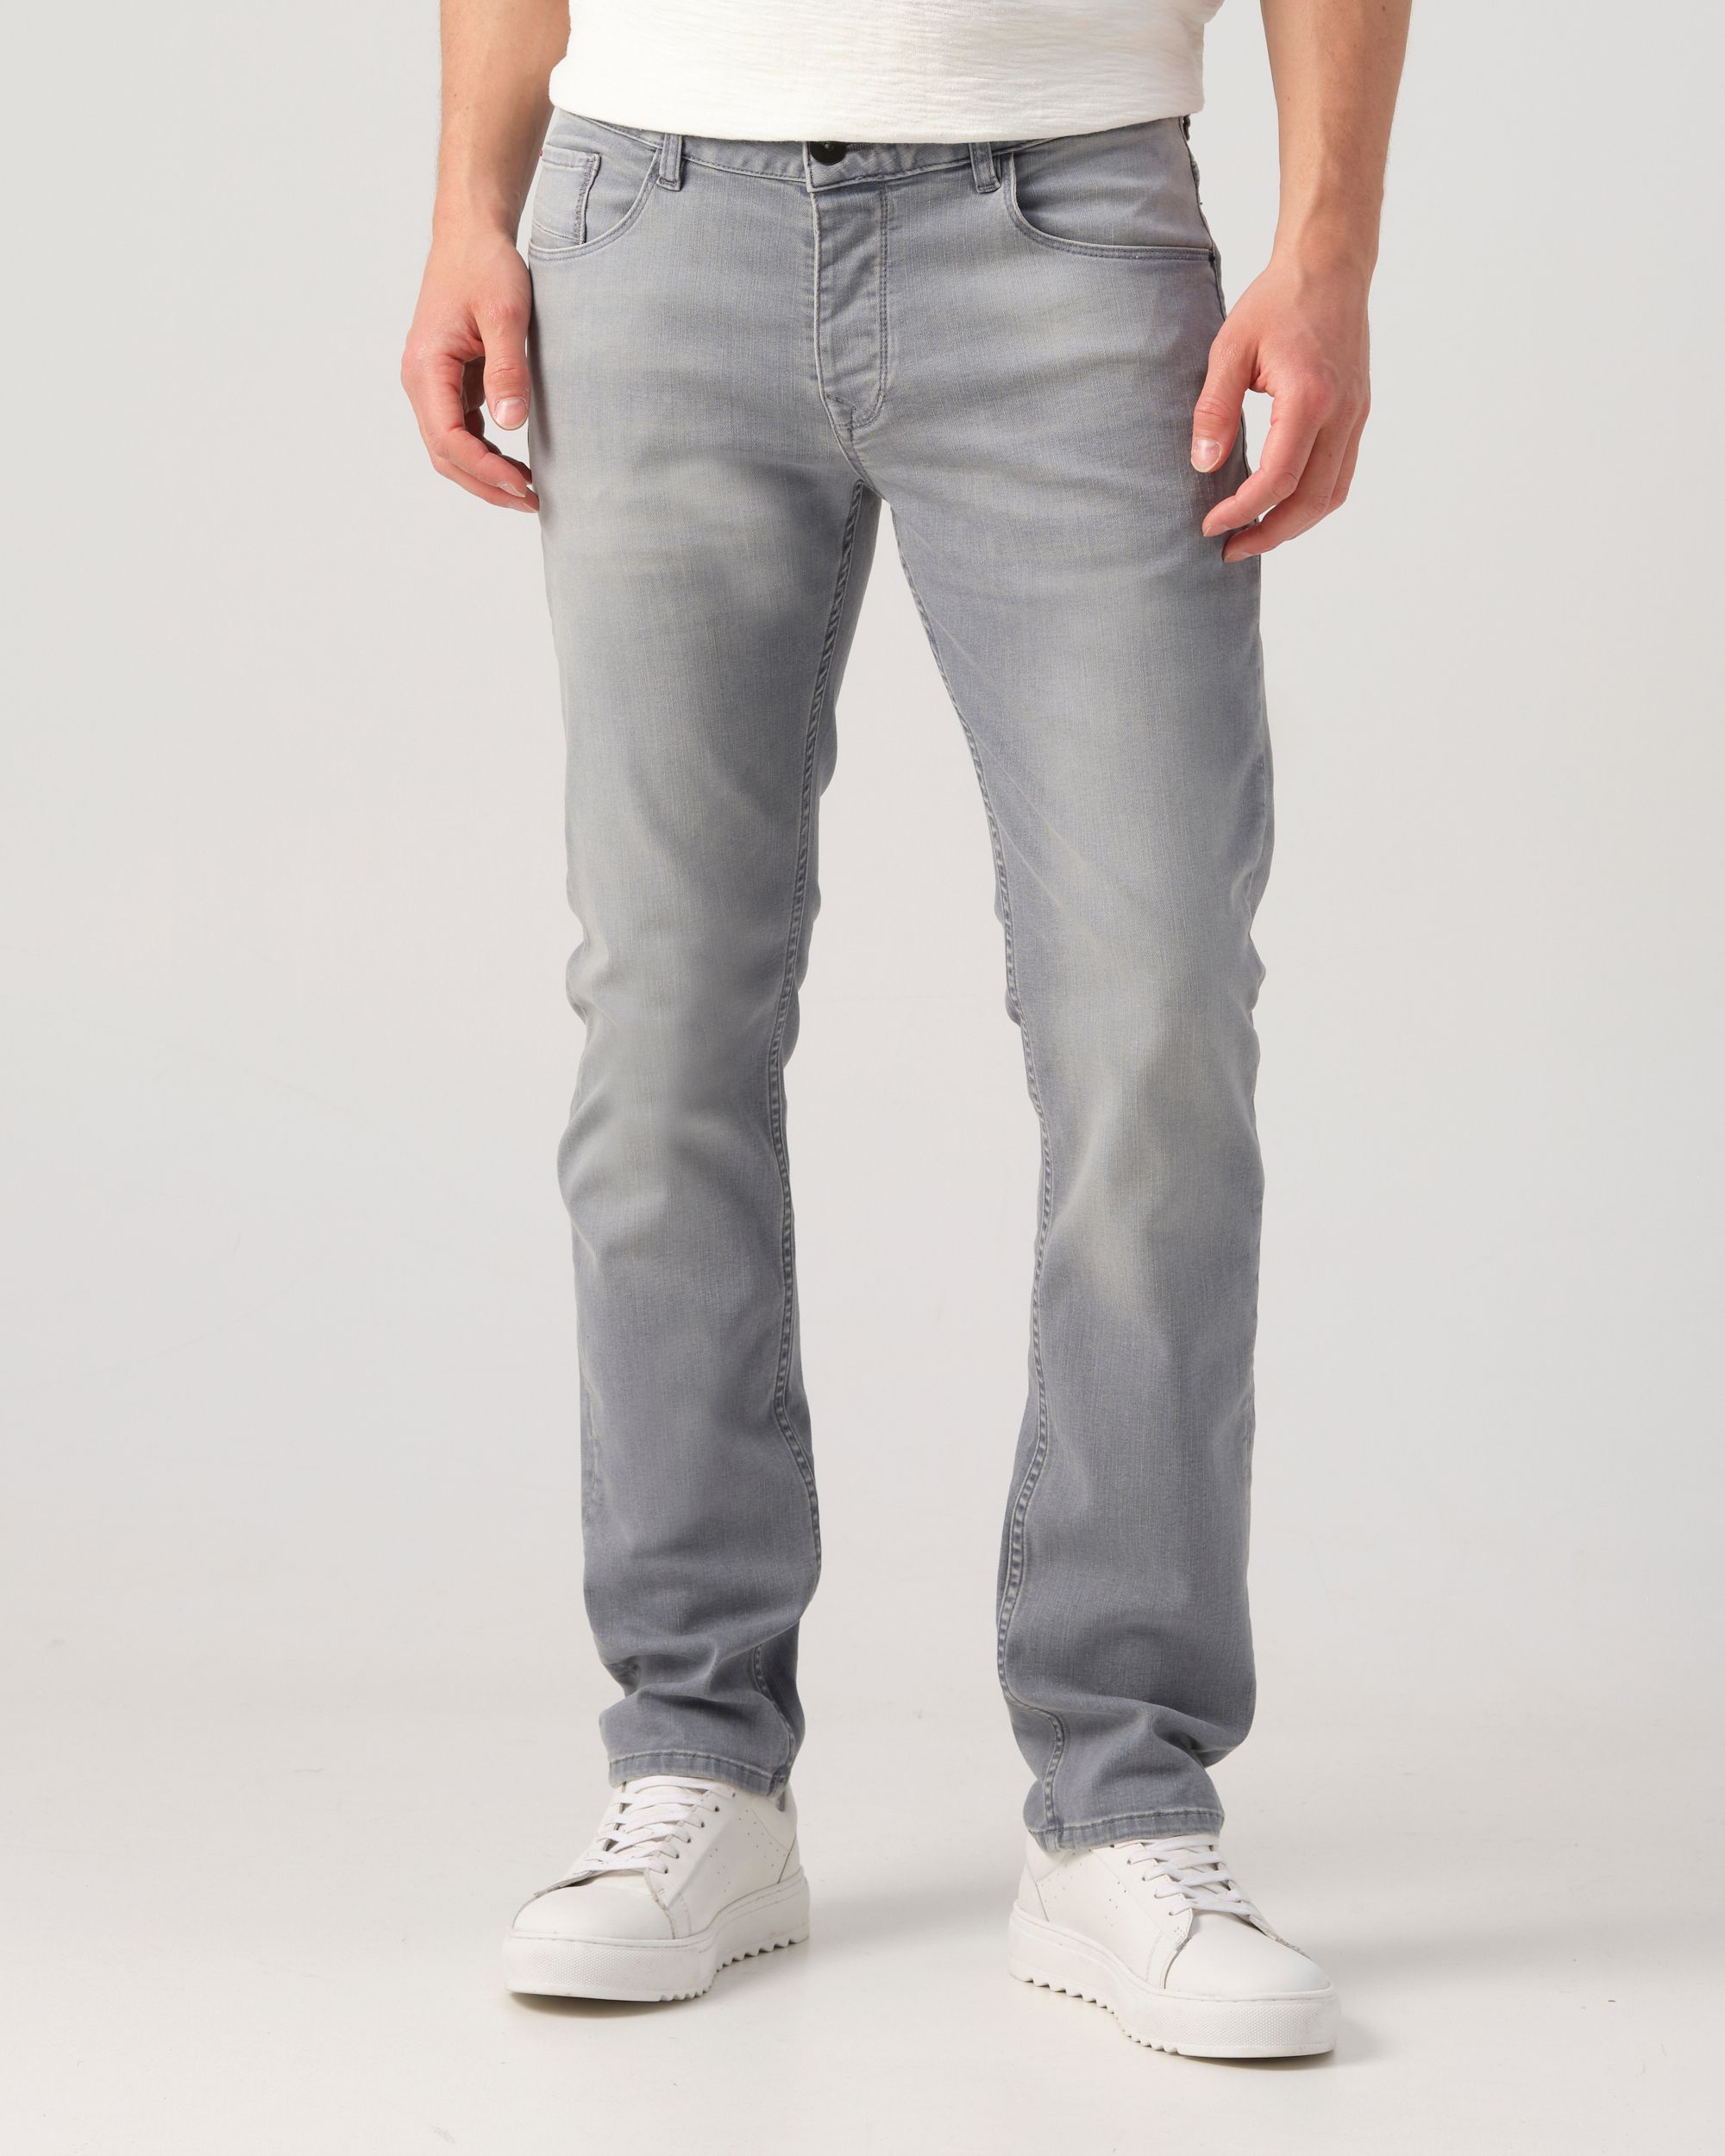 J.C. Rags Joah Blue Grey Jeans | Shop nu - Only for Men